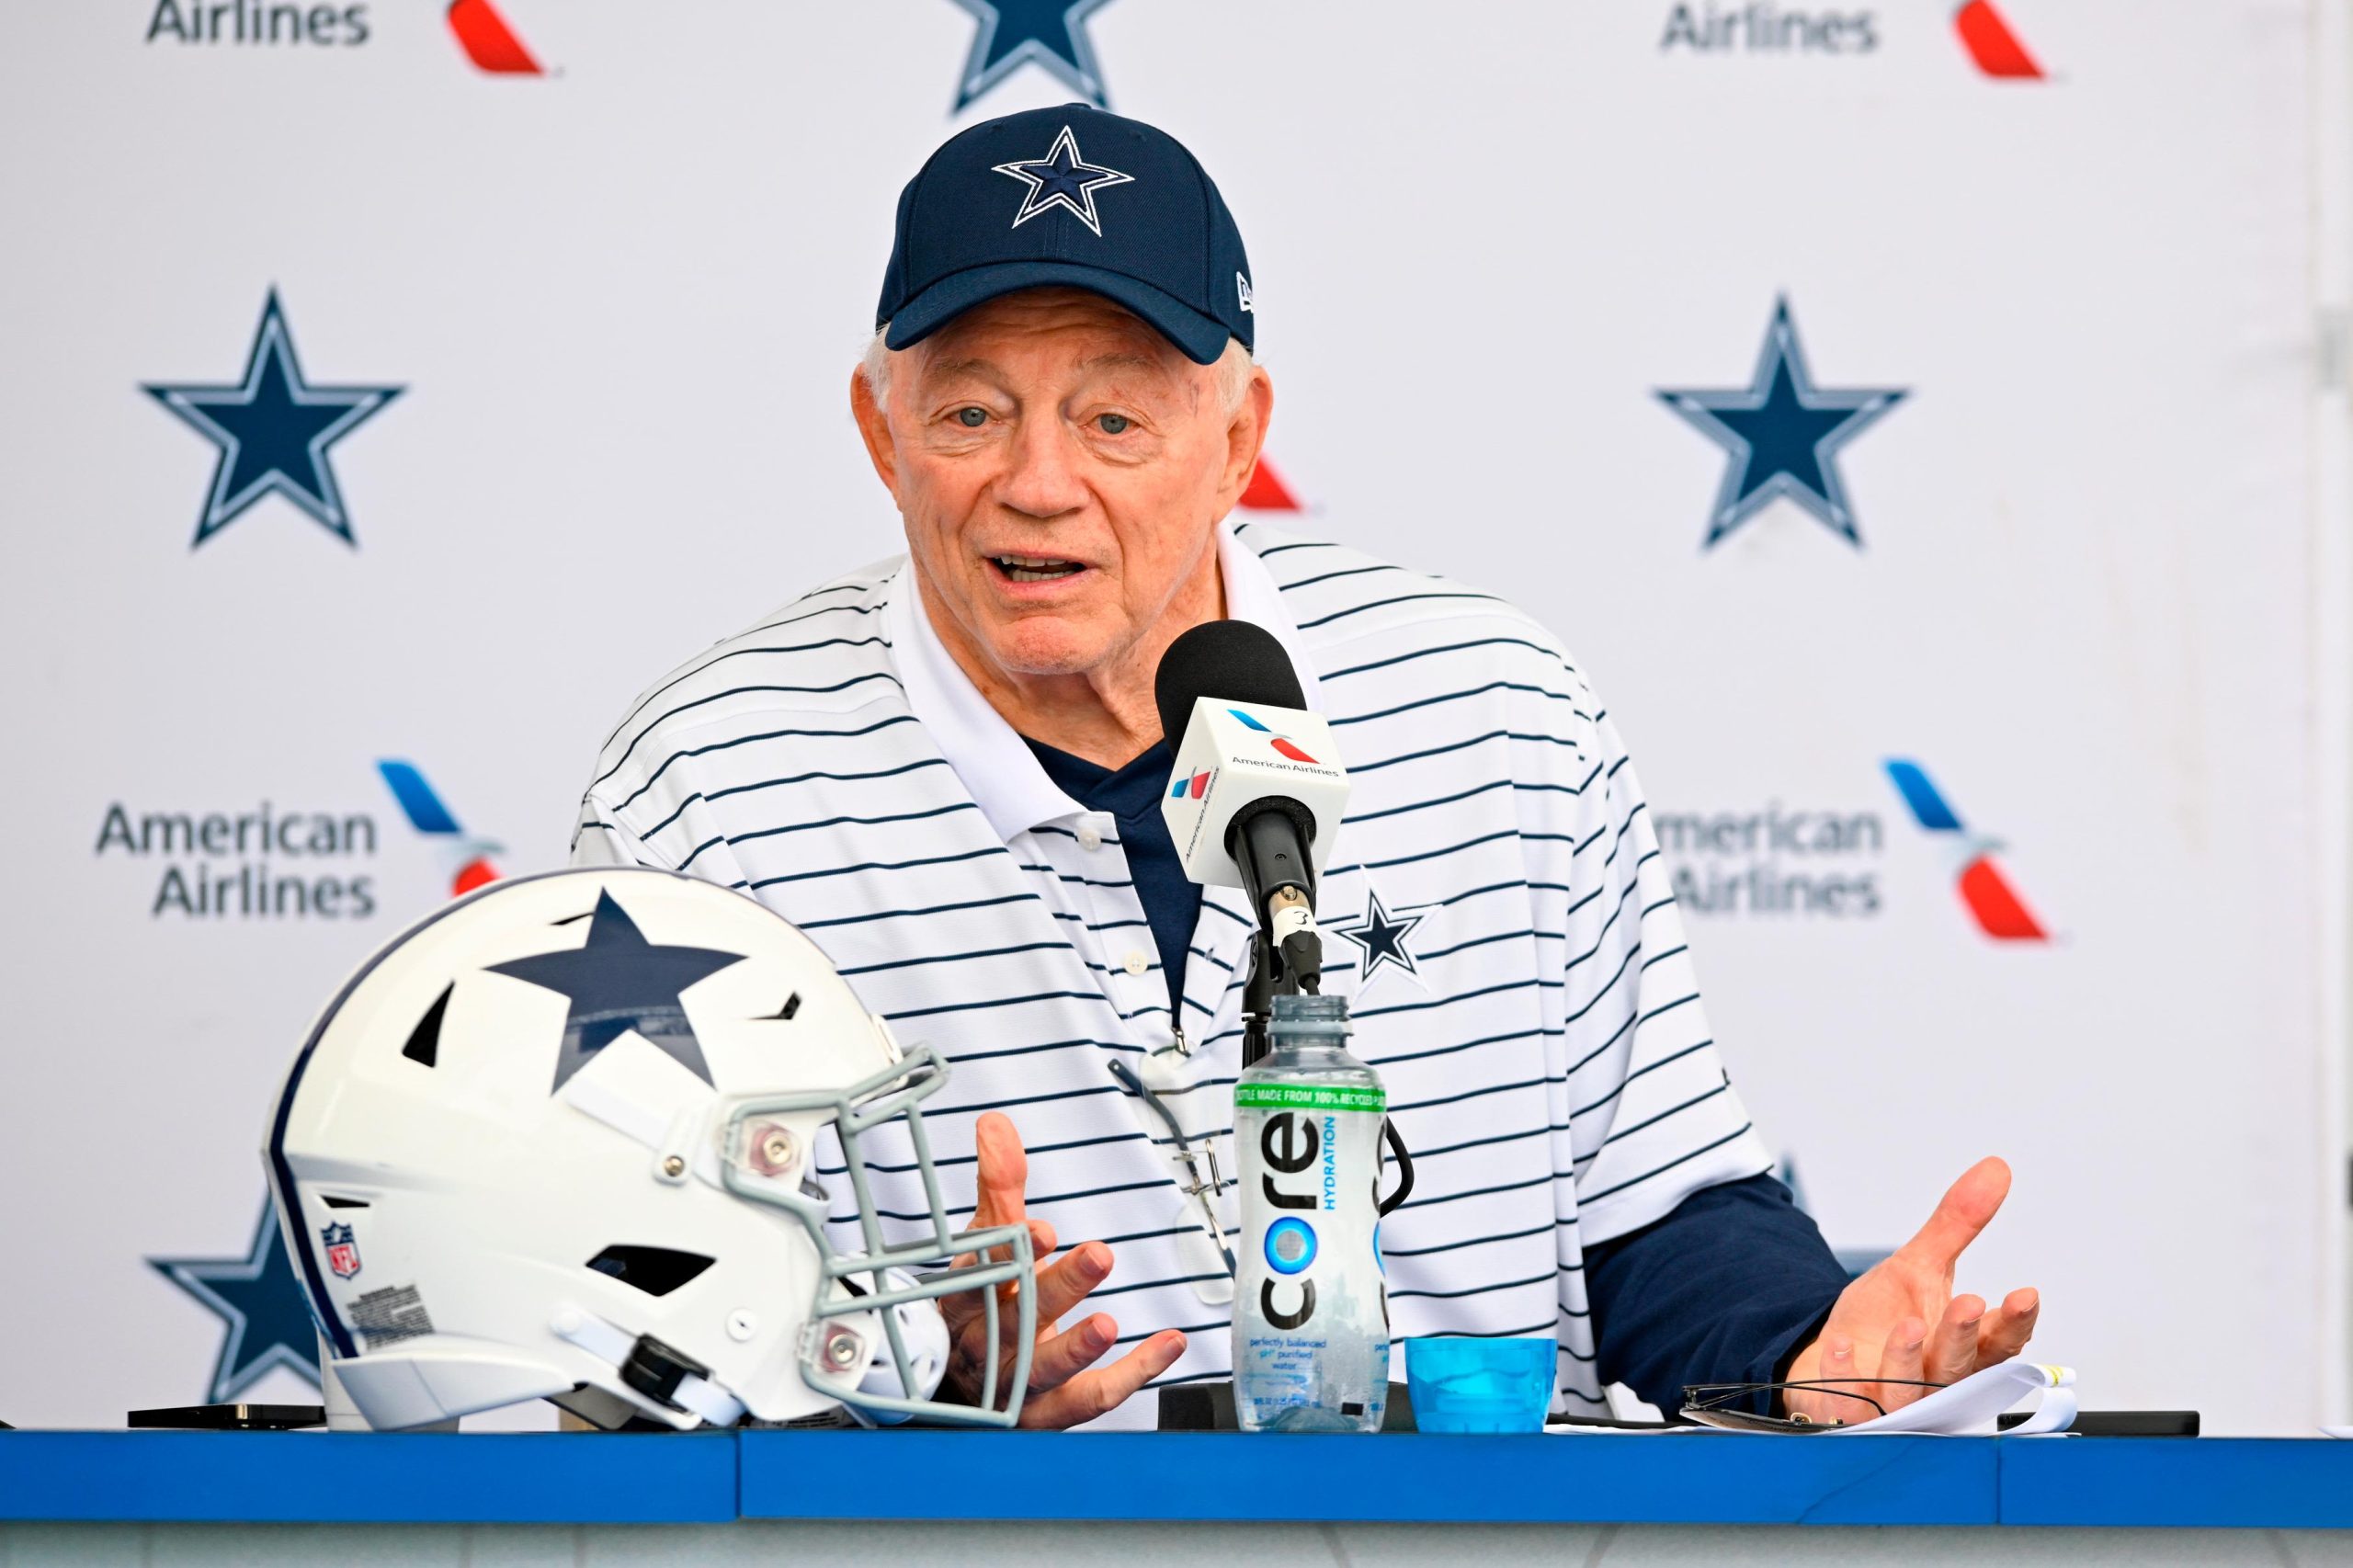 Dallas Cowboys’ Main Concern This Season, According to Jerry Jones